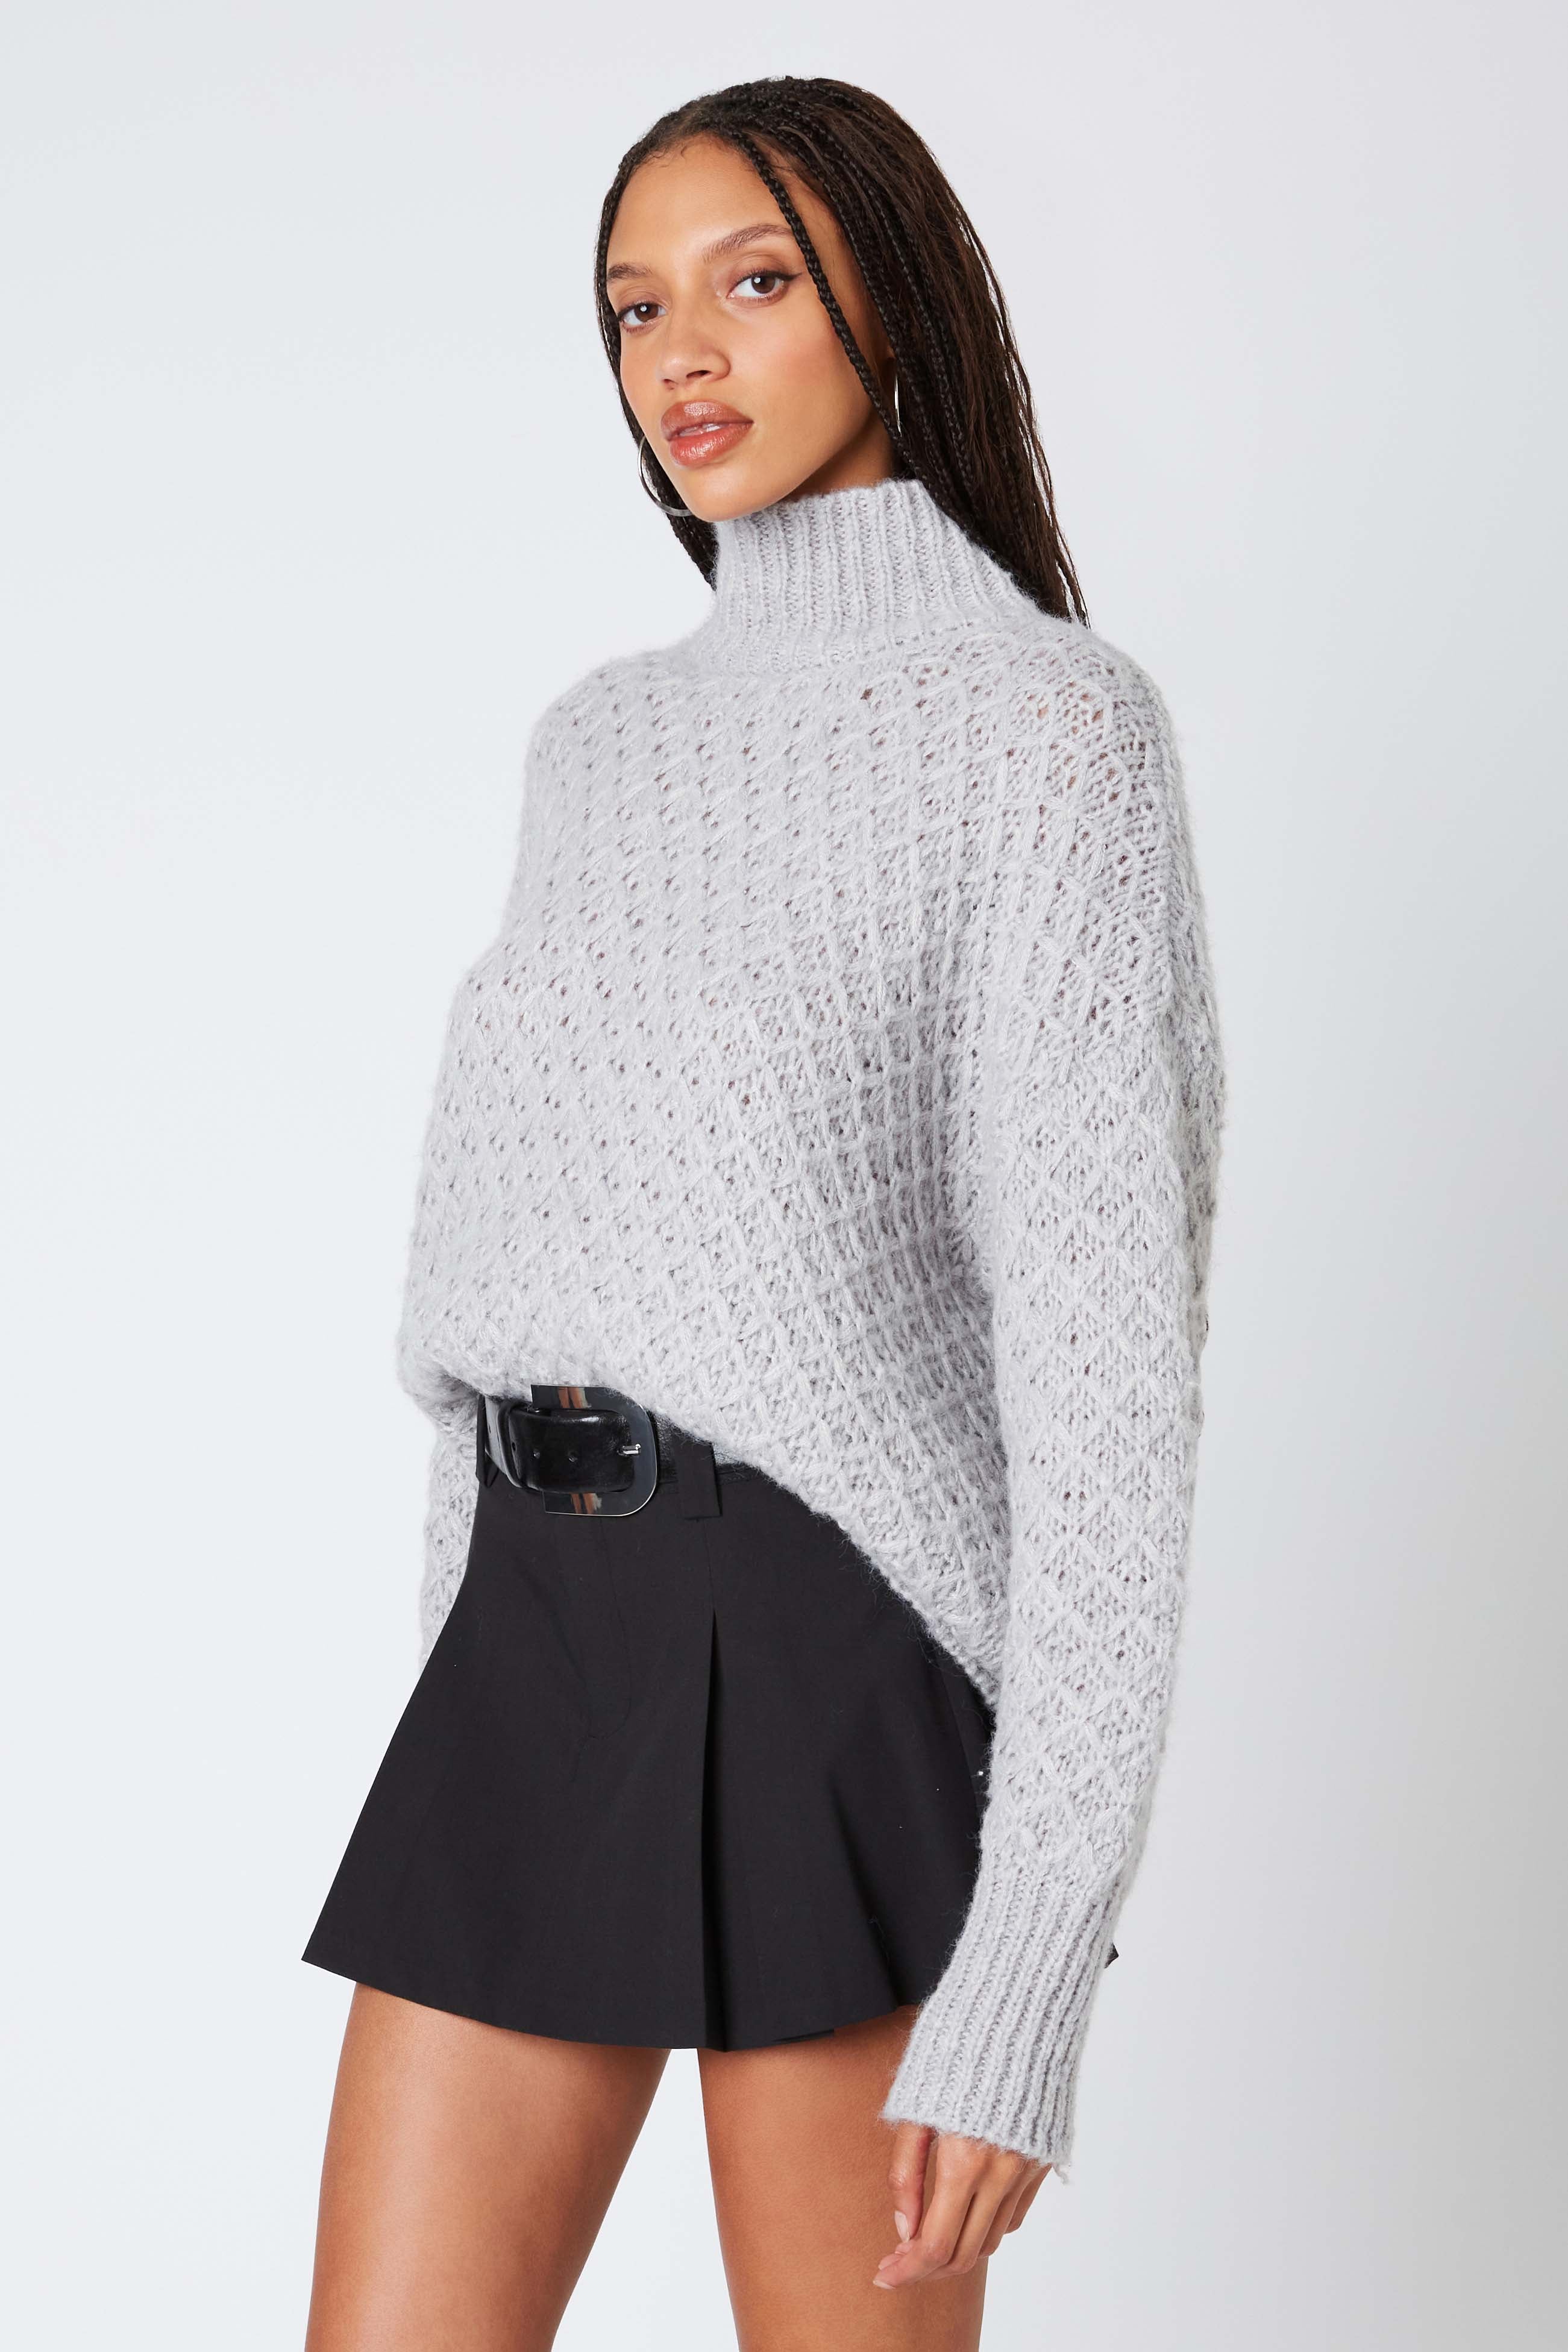 Knit Mockneck Sweater in Grey Side View